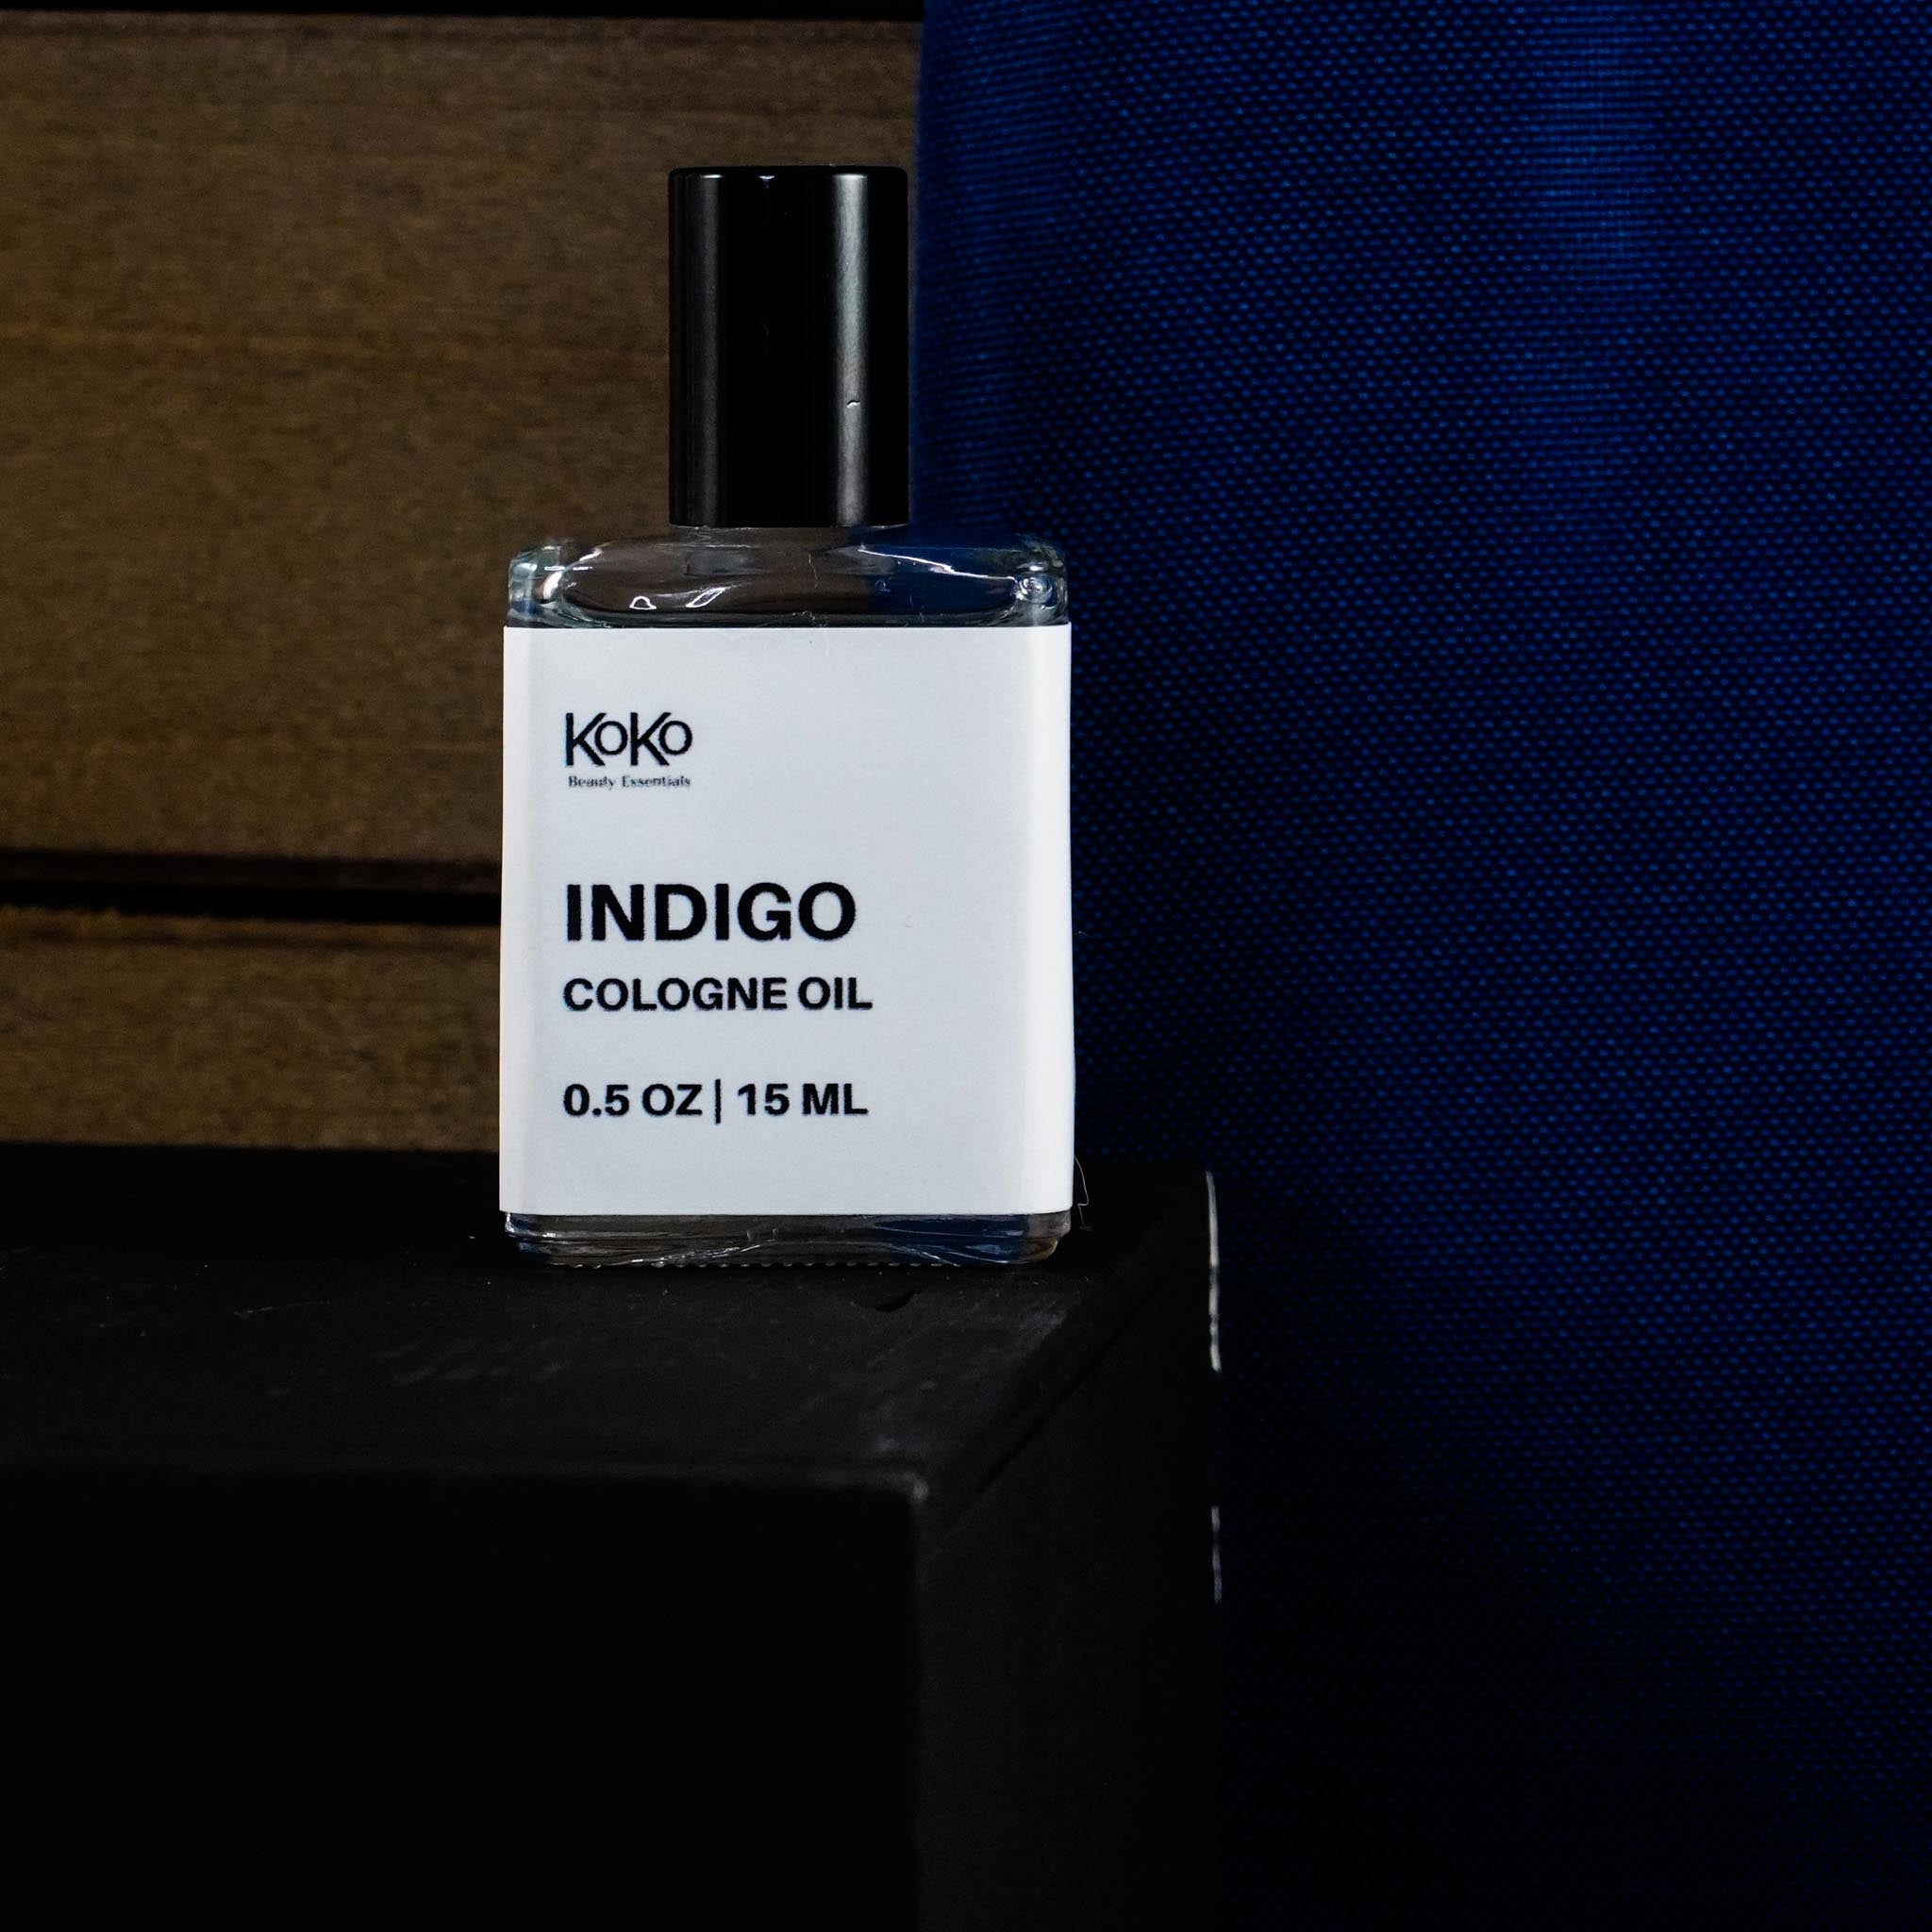 Indigo Cologne Oil